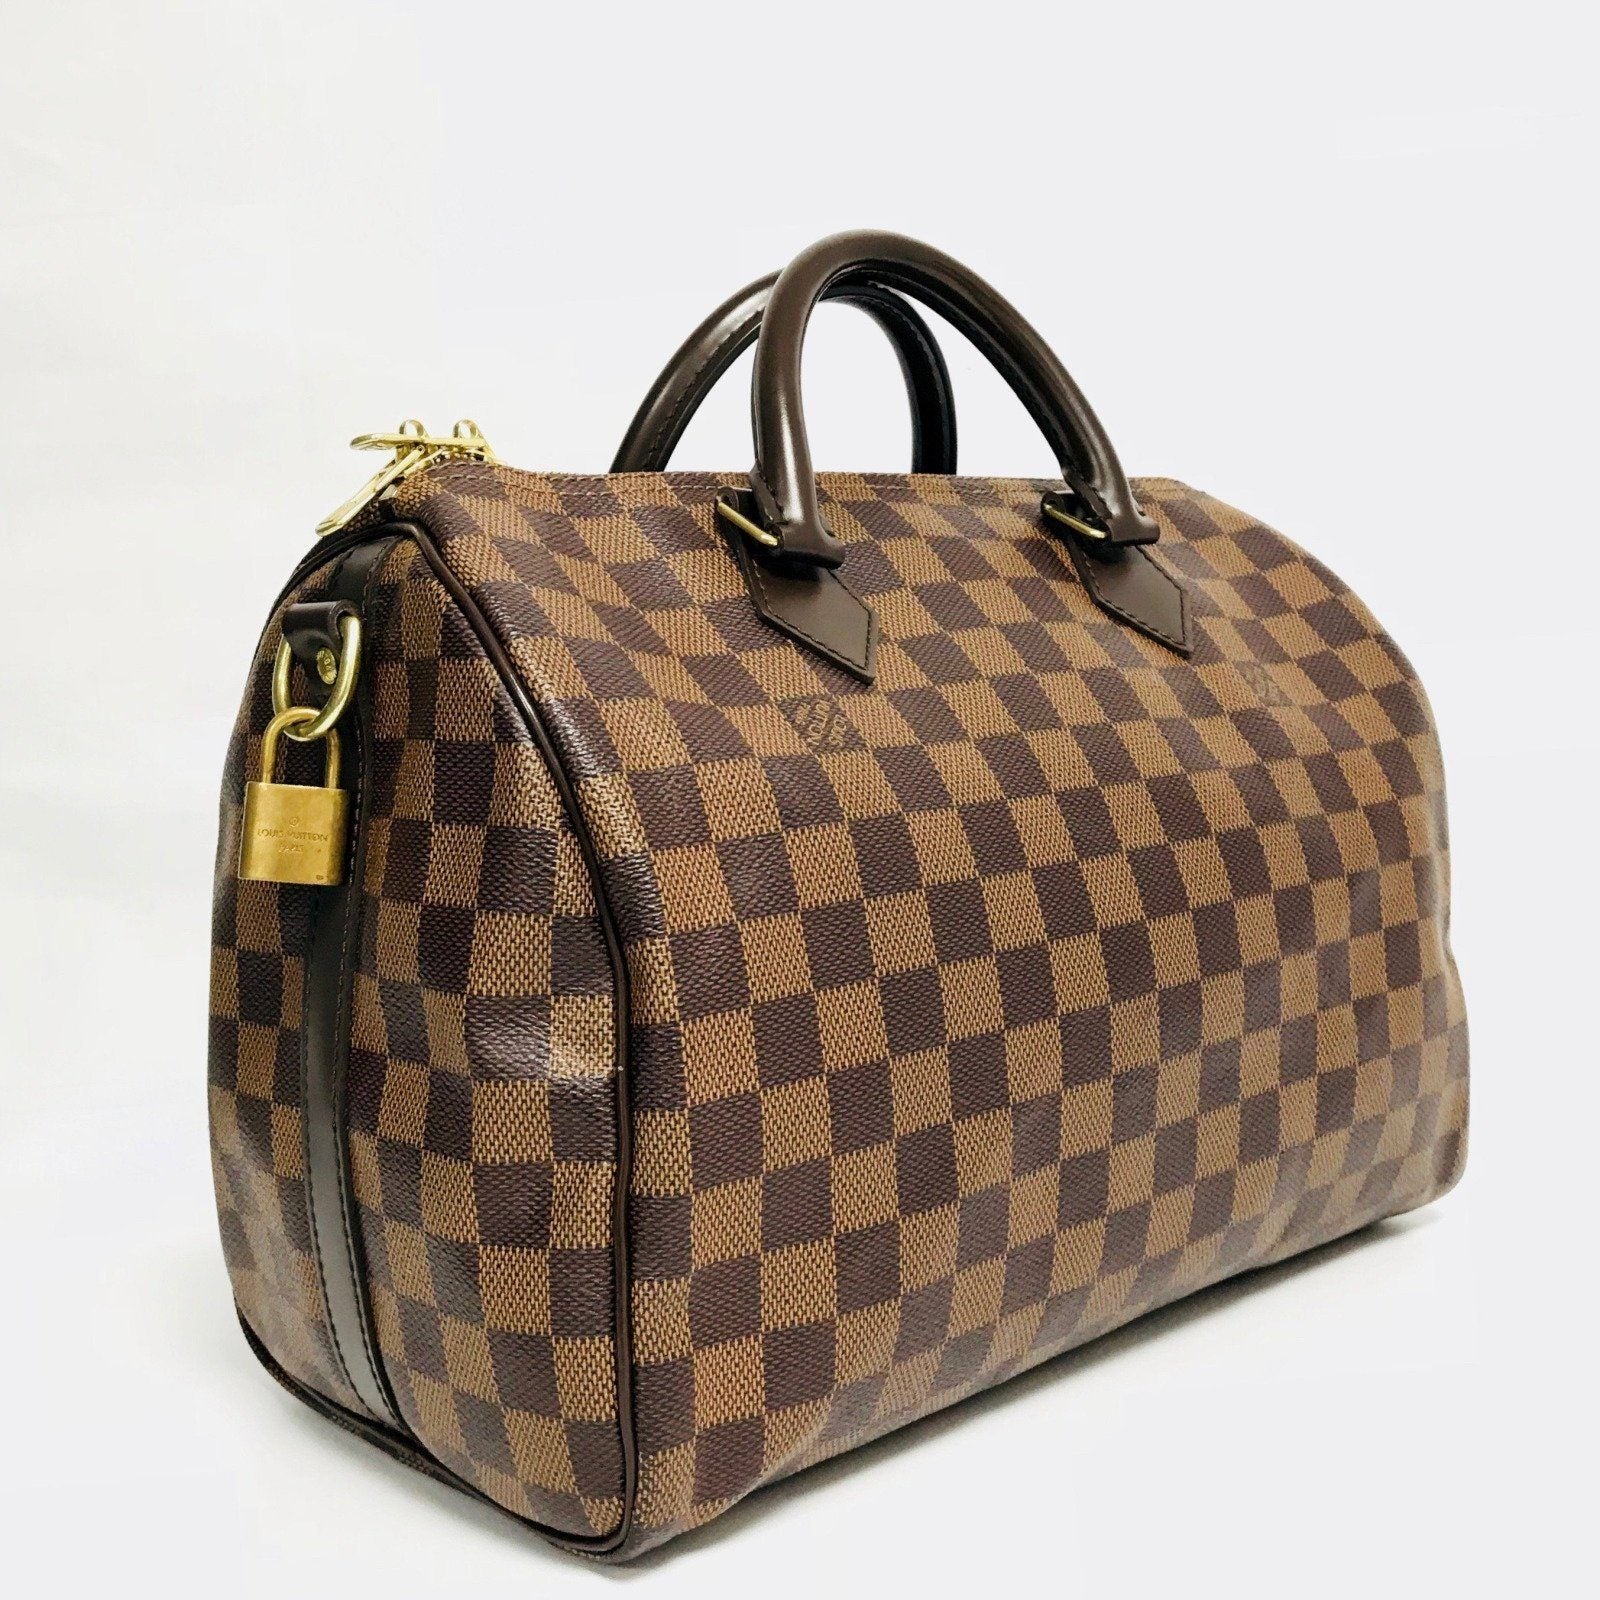 Shop authentic Louis Vuitton Damier Ebene Speedy 30 at revogue for